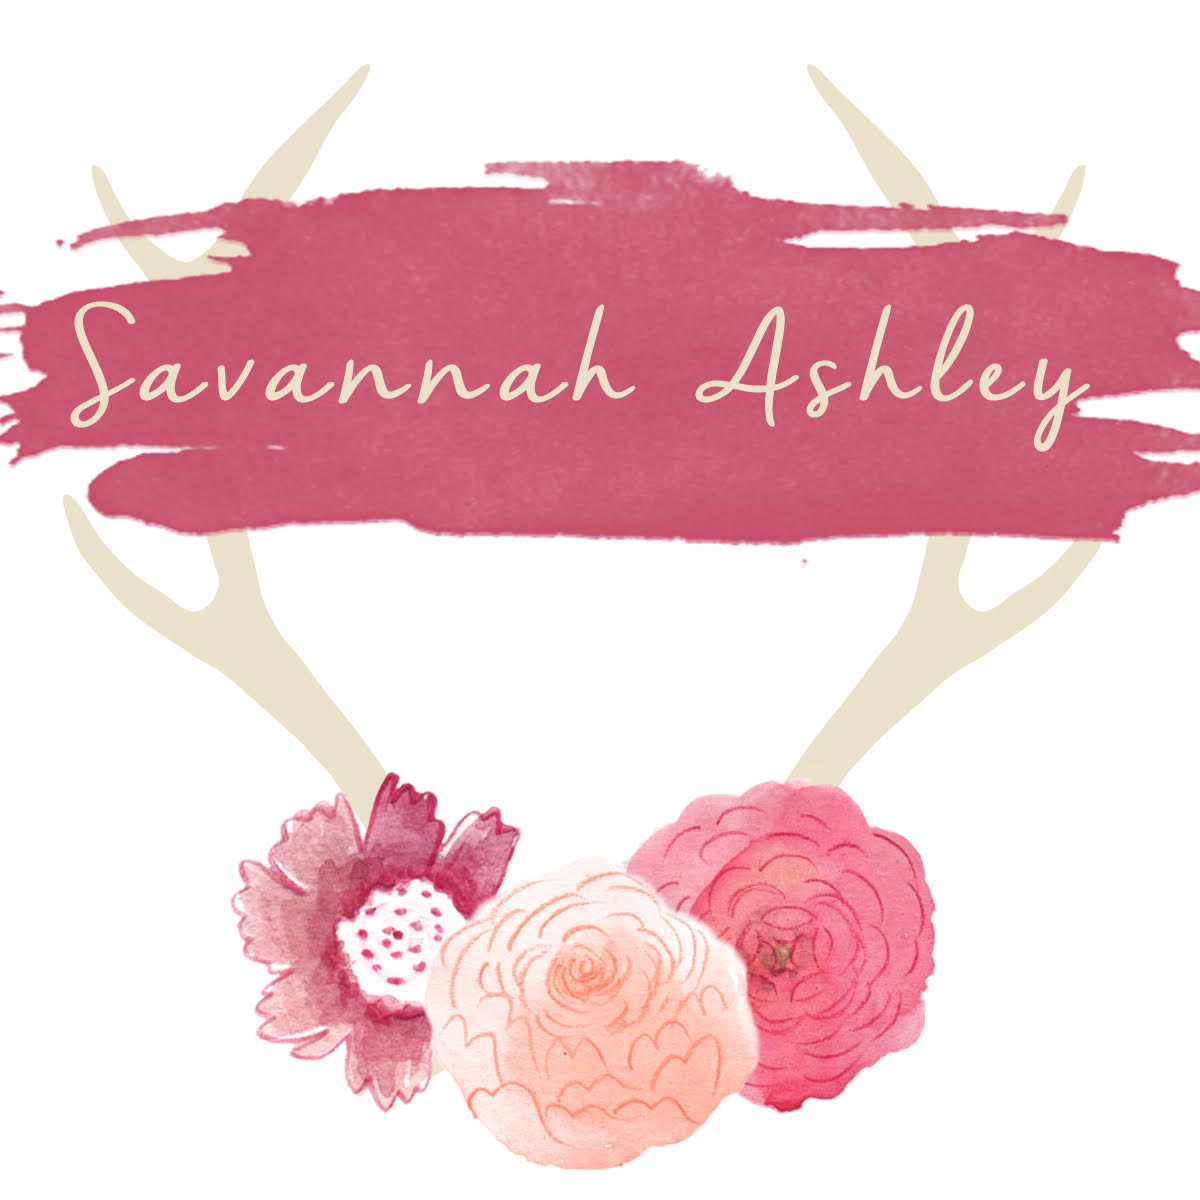 Savannah Ashley